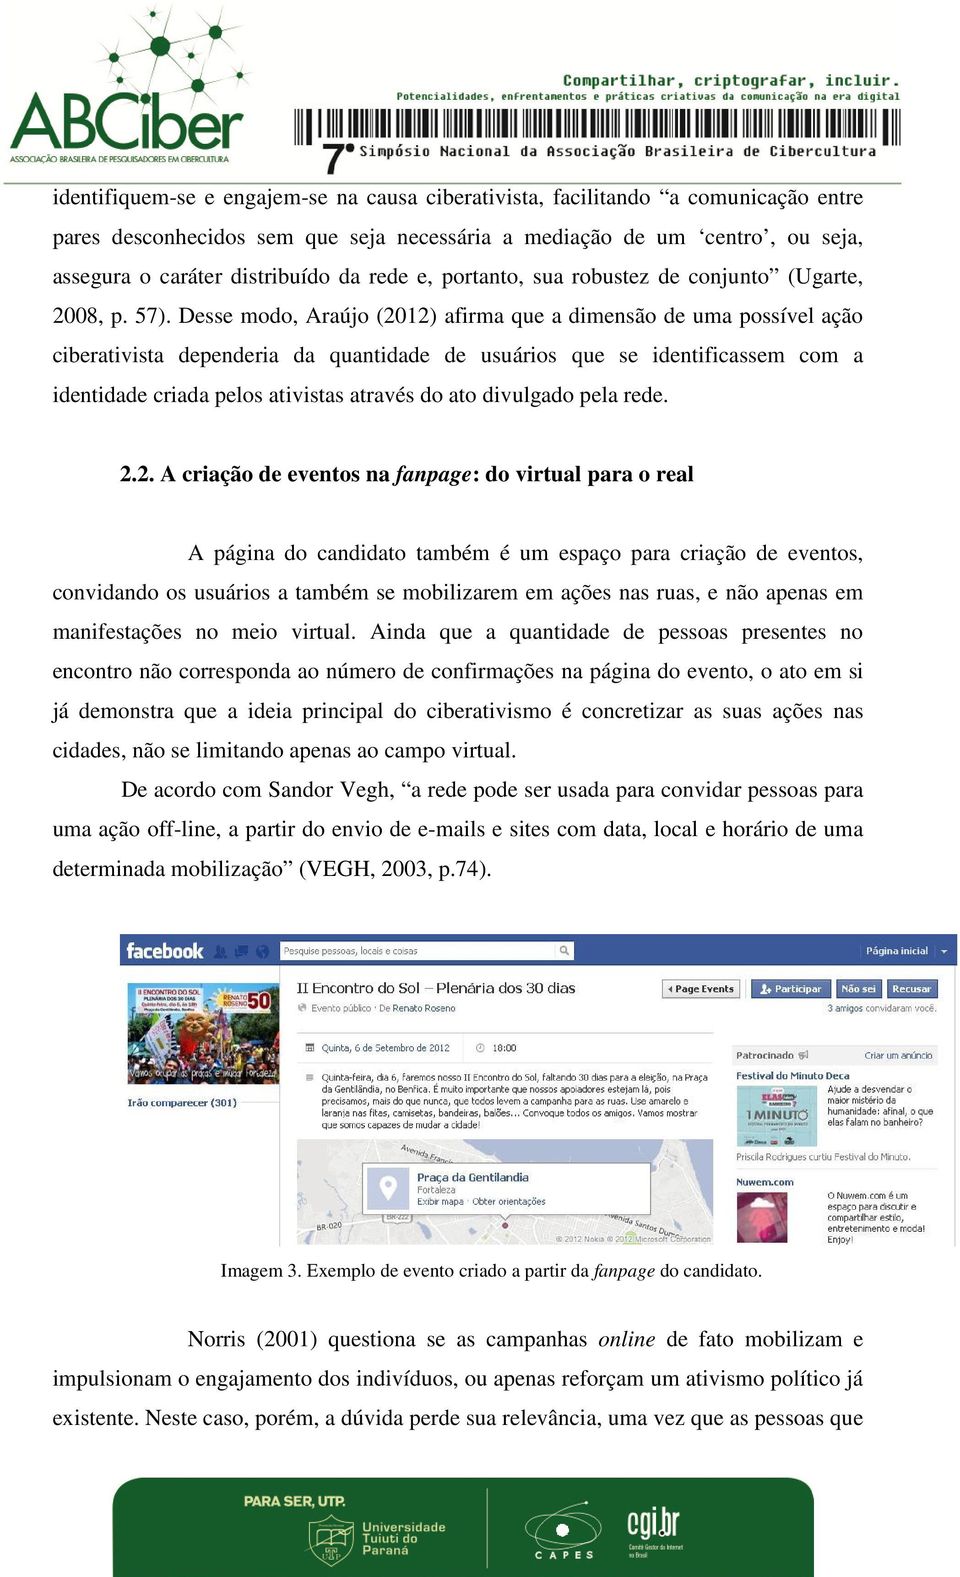 Desse modo, Araújo (2012) afirma que a dimensão de uma possível ação ciberativista dependeria da quantidade de usuários que se identificassem com a identidade criada pelos ativistas através do ato